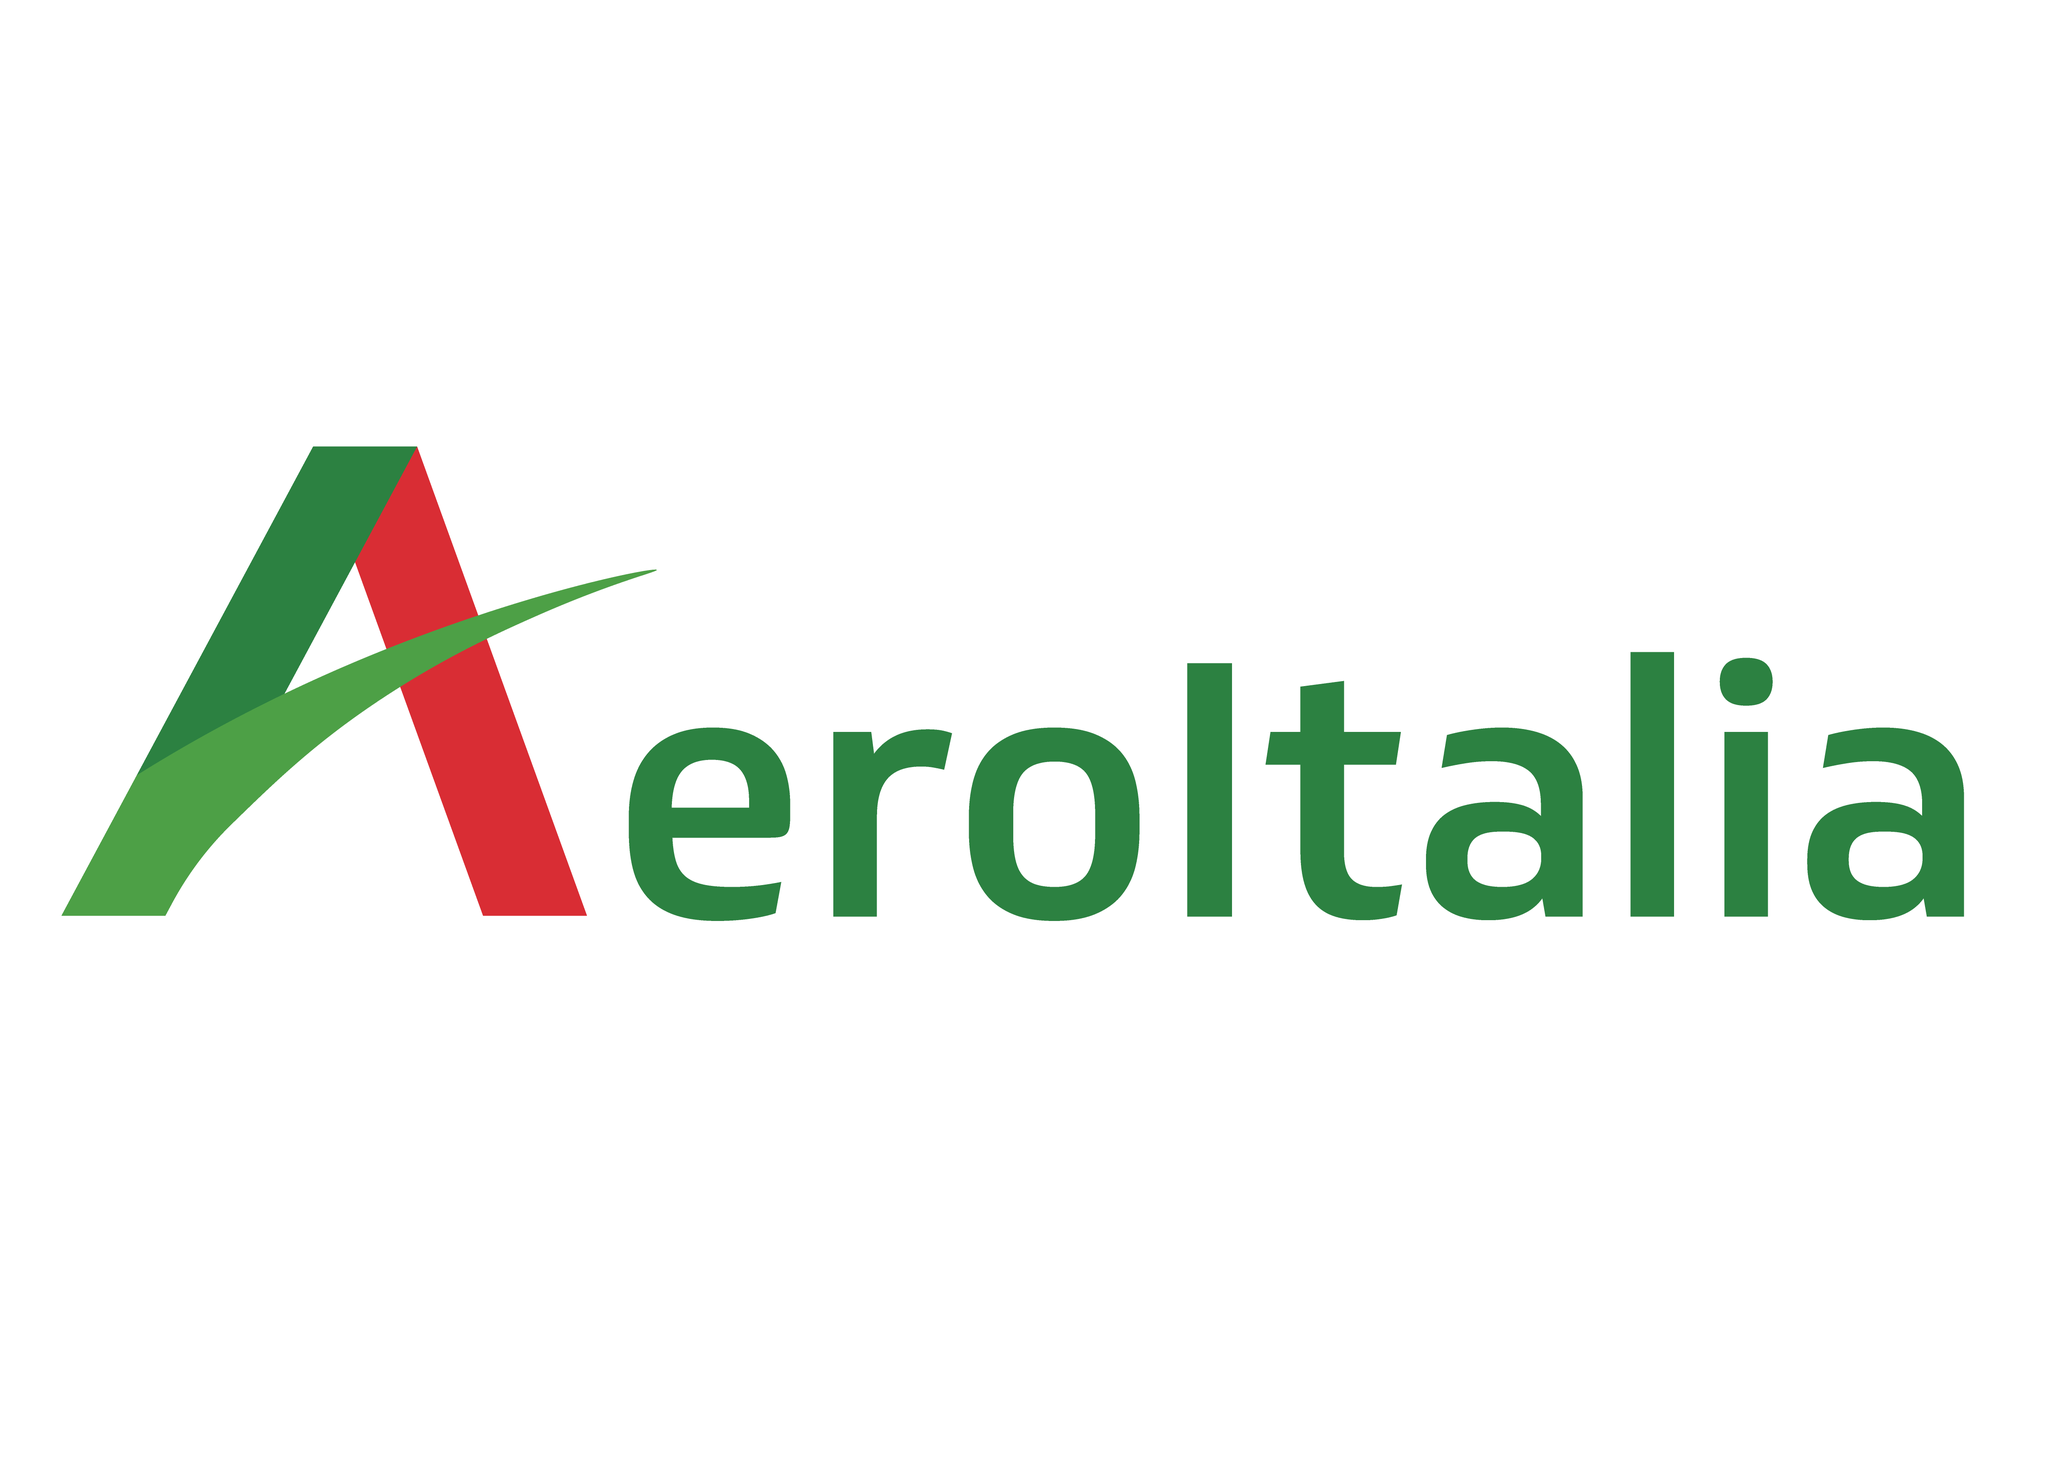 Nuova compagnia Aeroitalia, Confael: uno smacco per ITA e per il governo